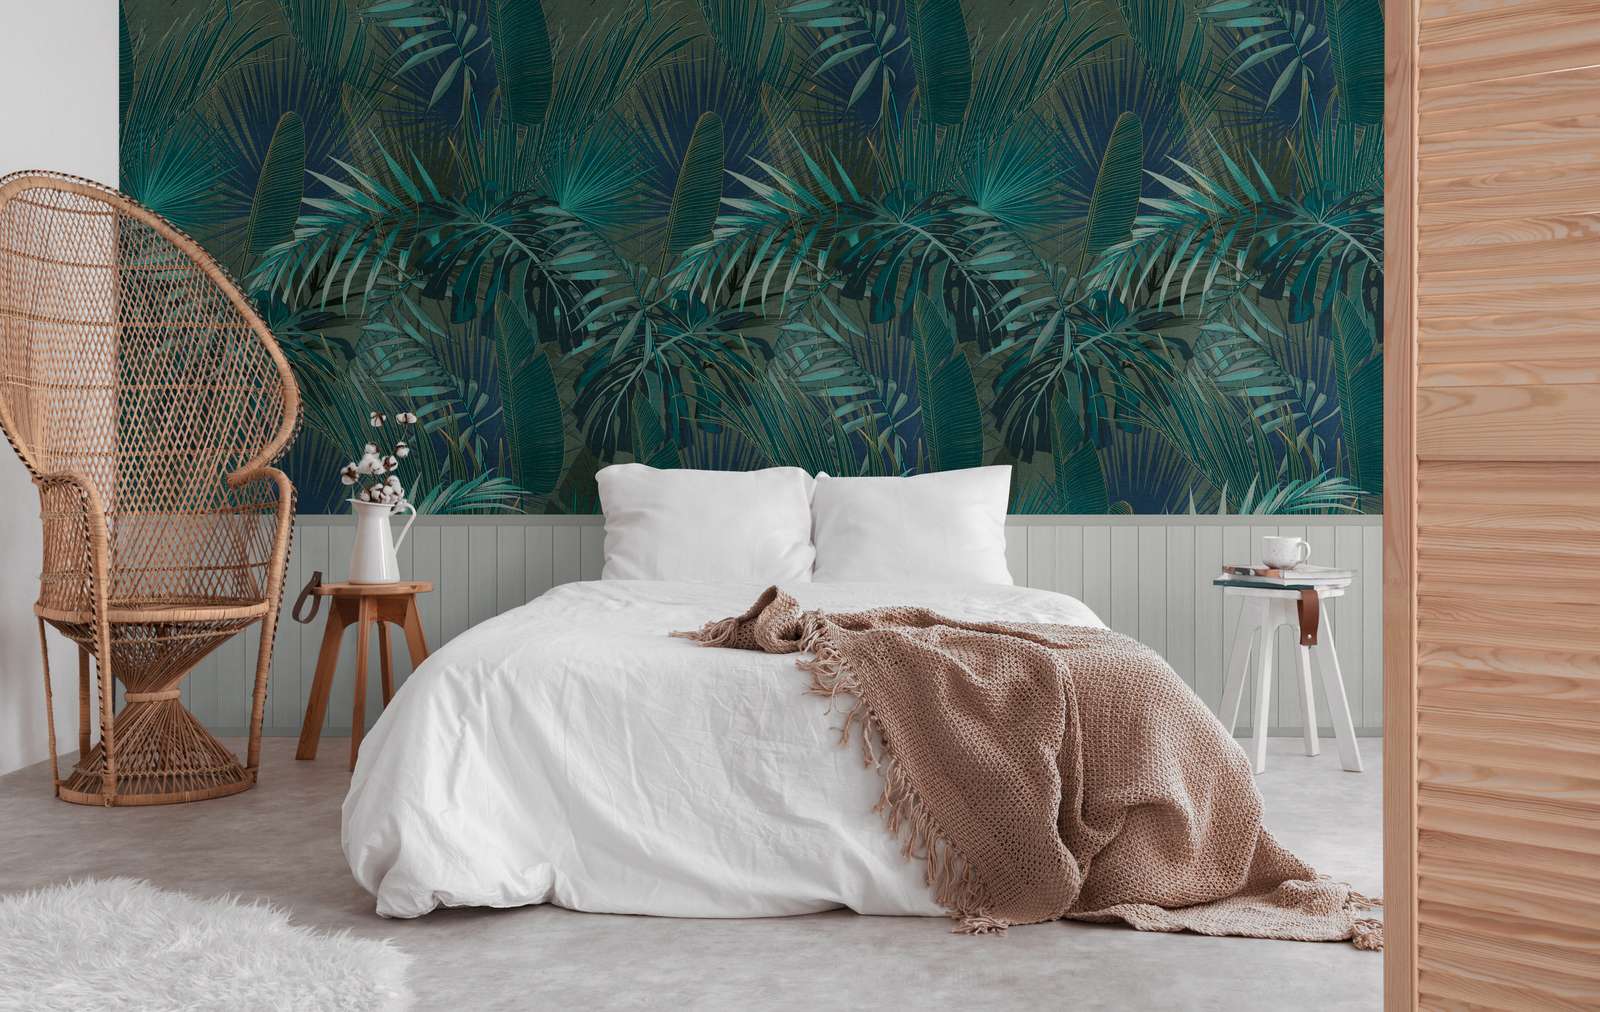             Papel pintado motivo no tejido con borde de zócalo efecto madera y motivo jungla - gris, azul, turquesa
        